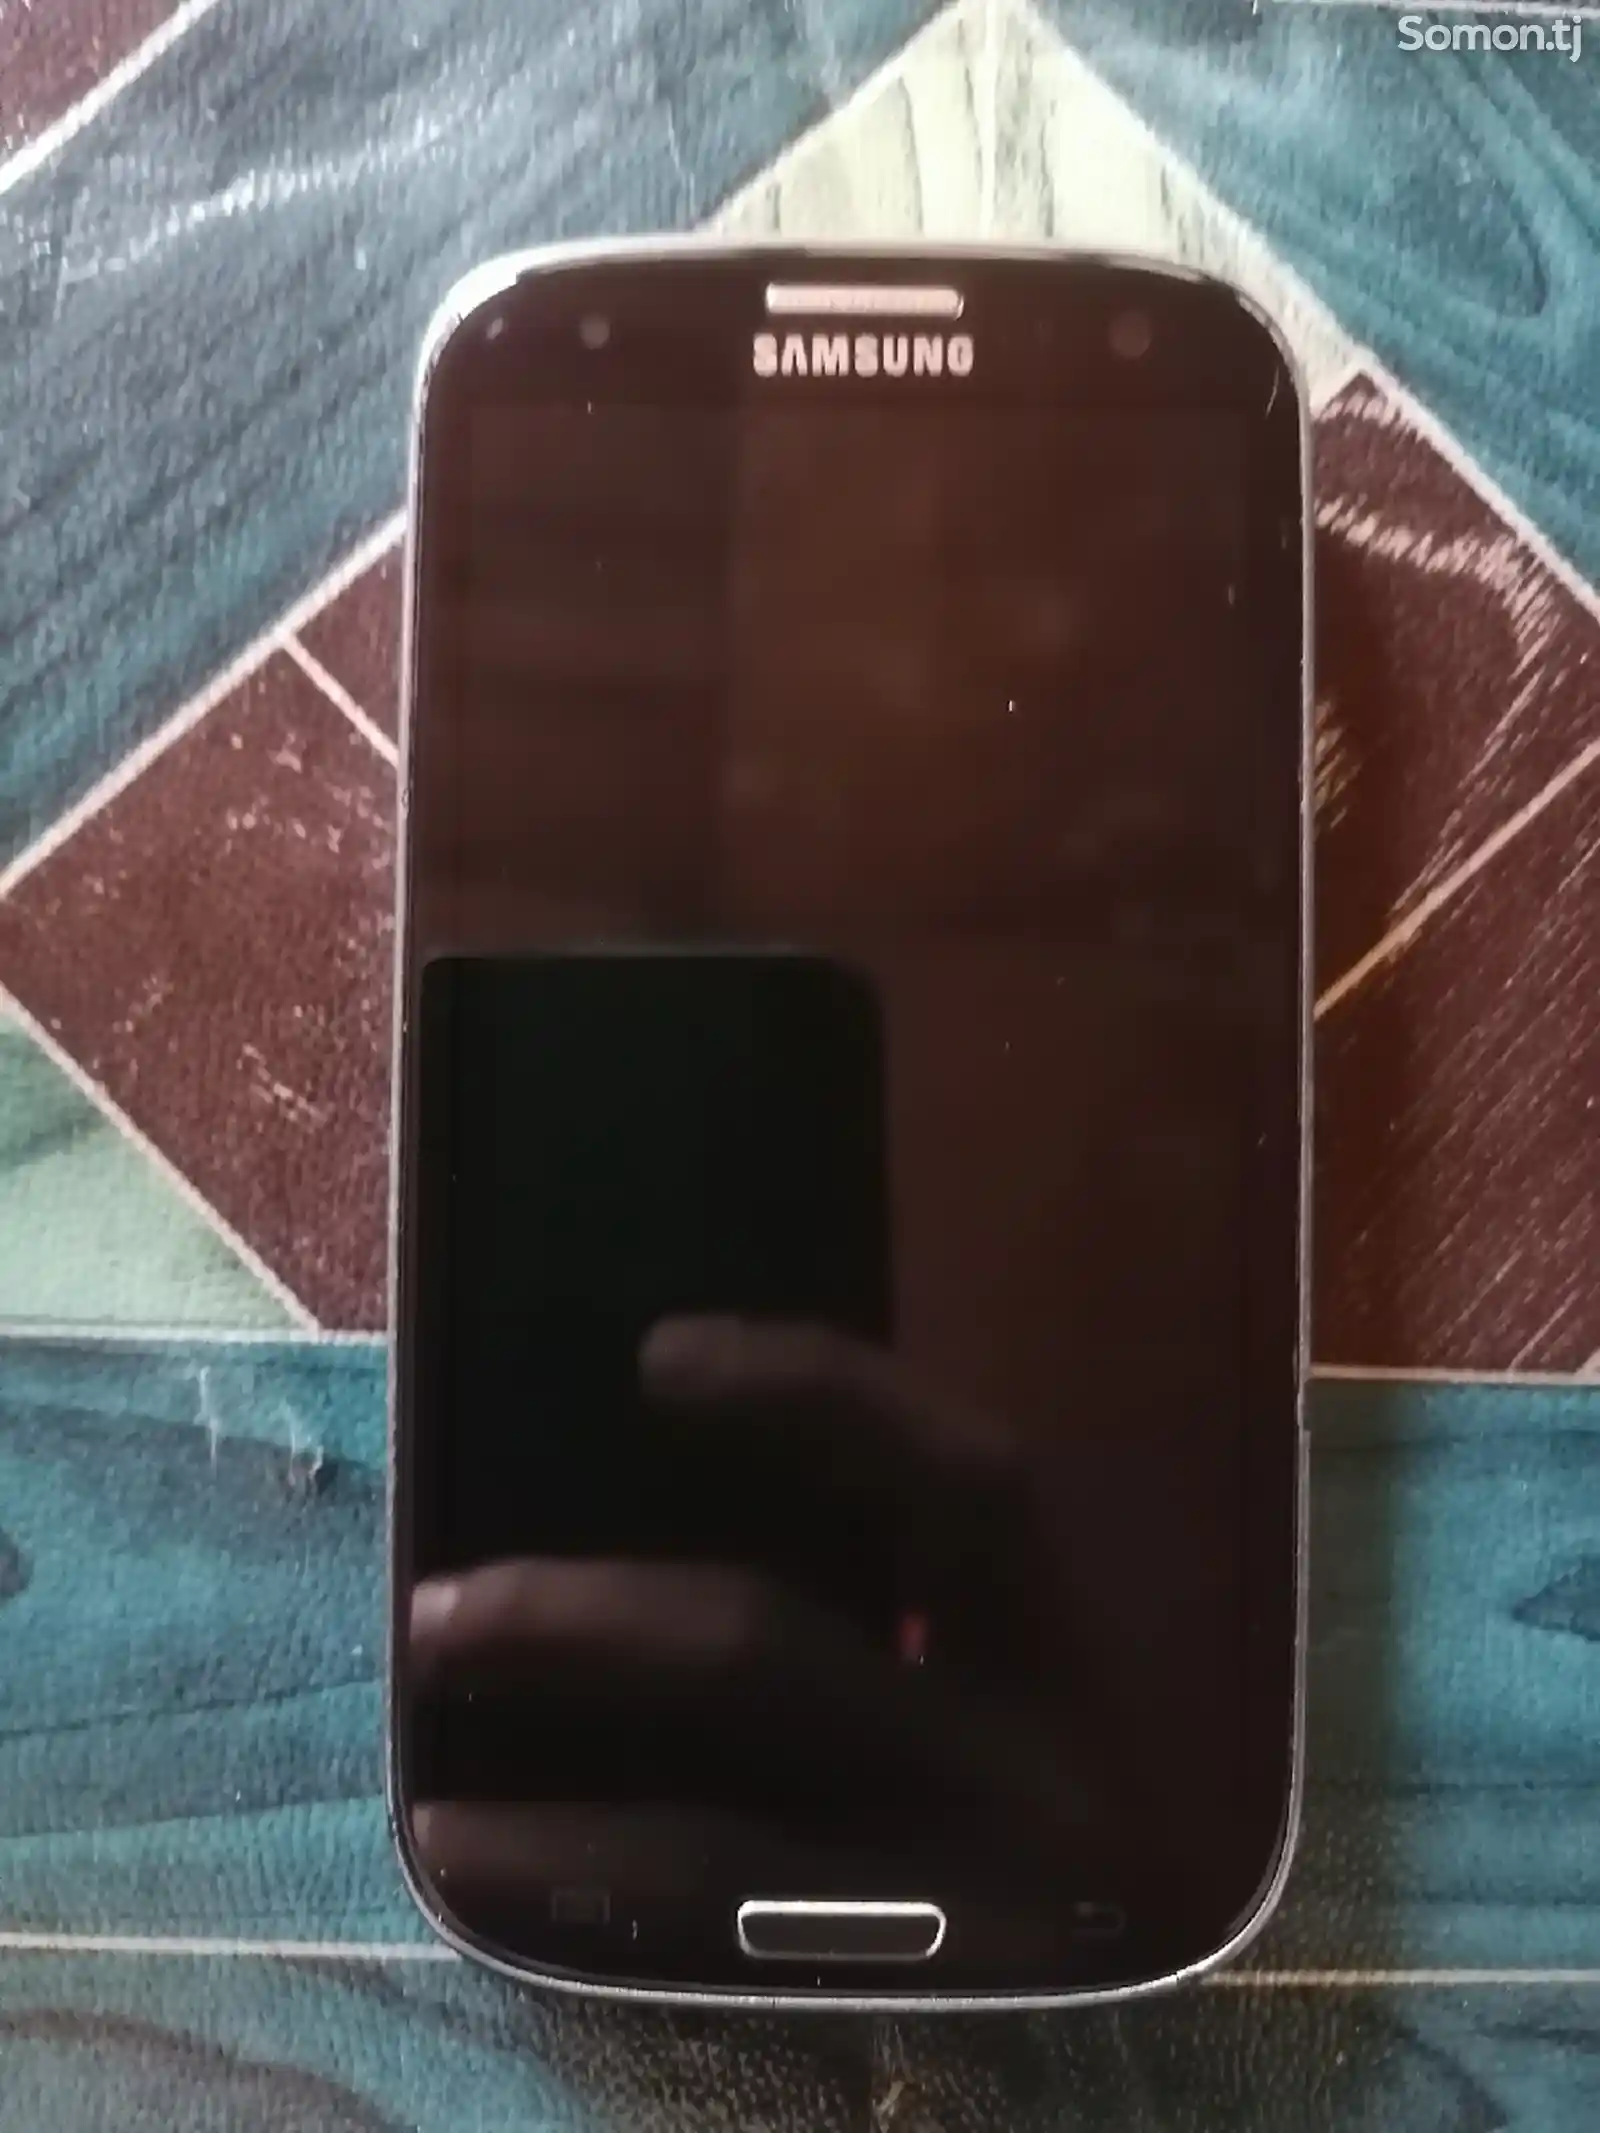 Samsung Galaxy S lll Neo-3